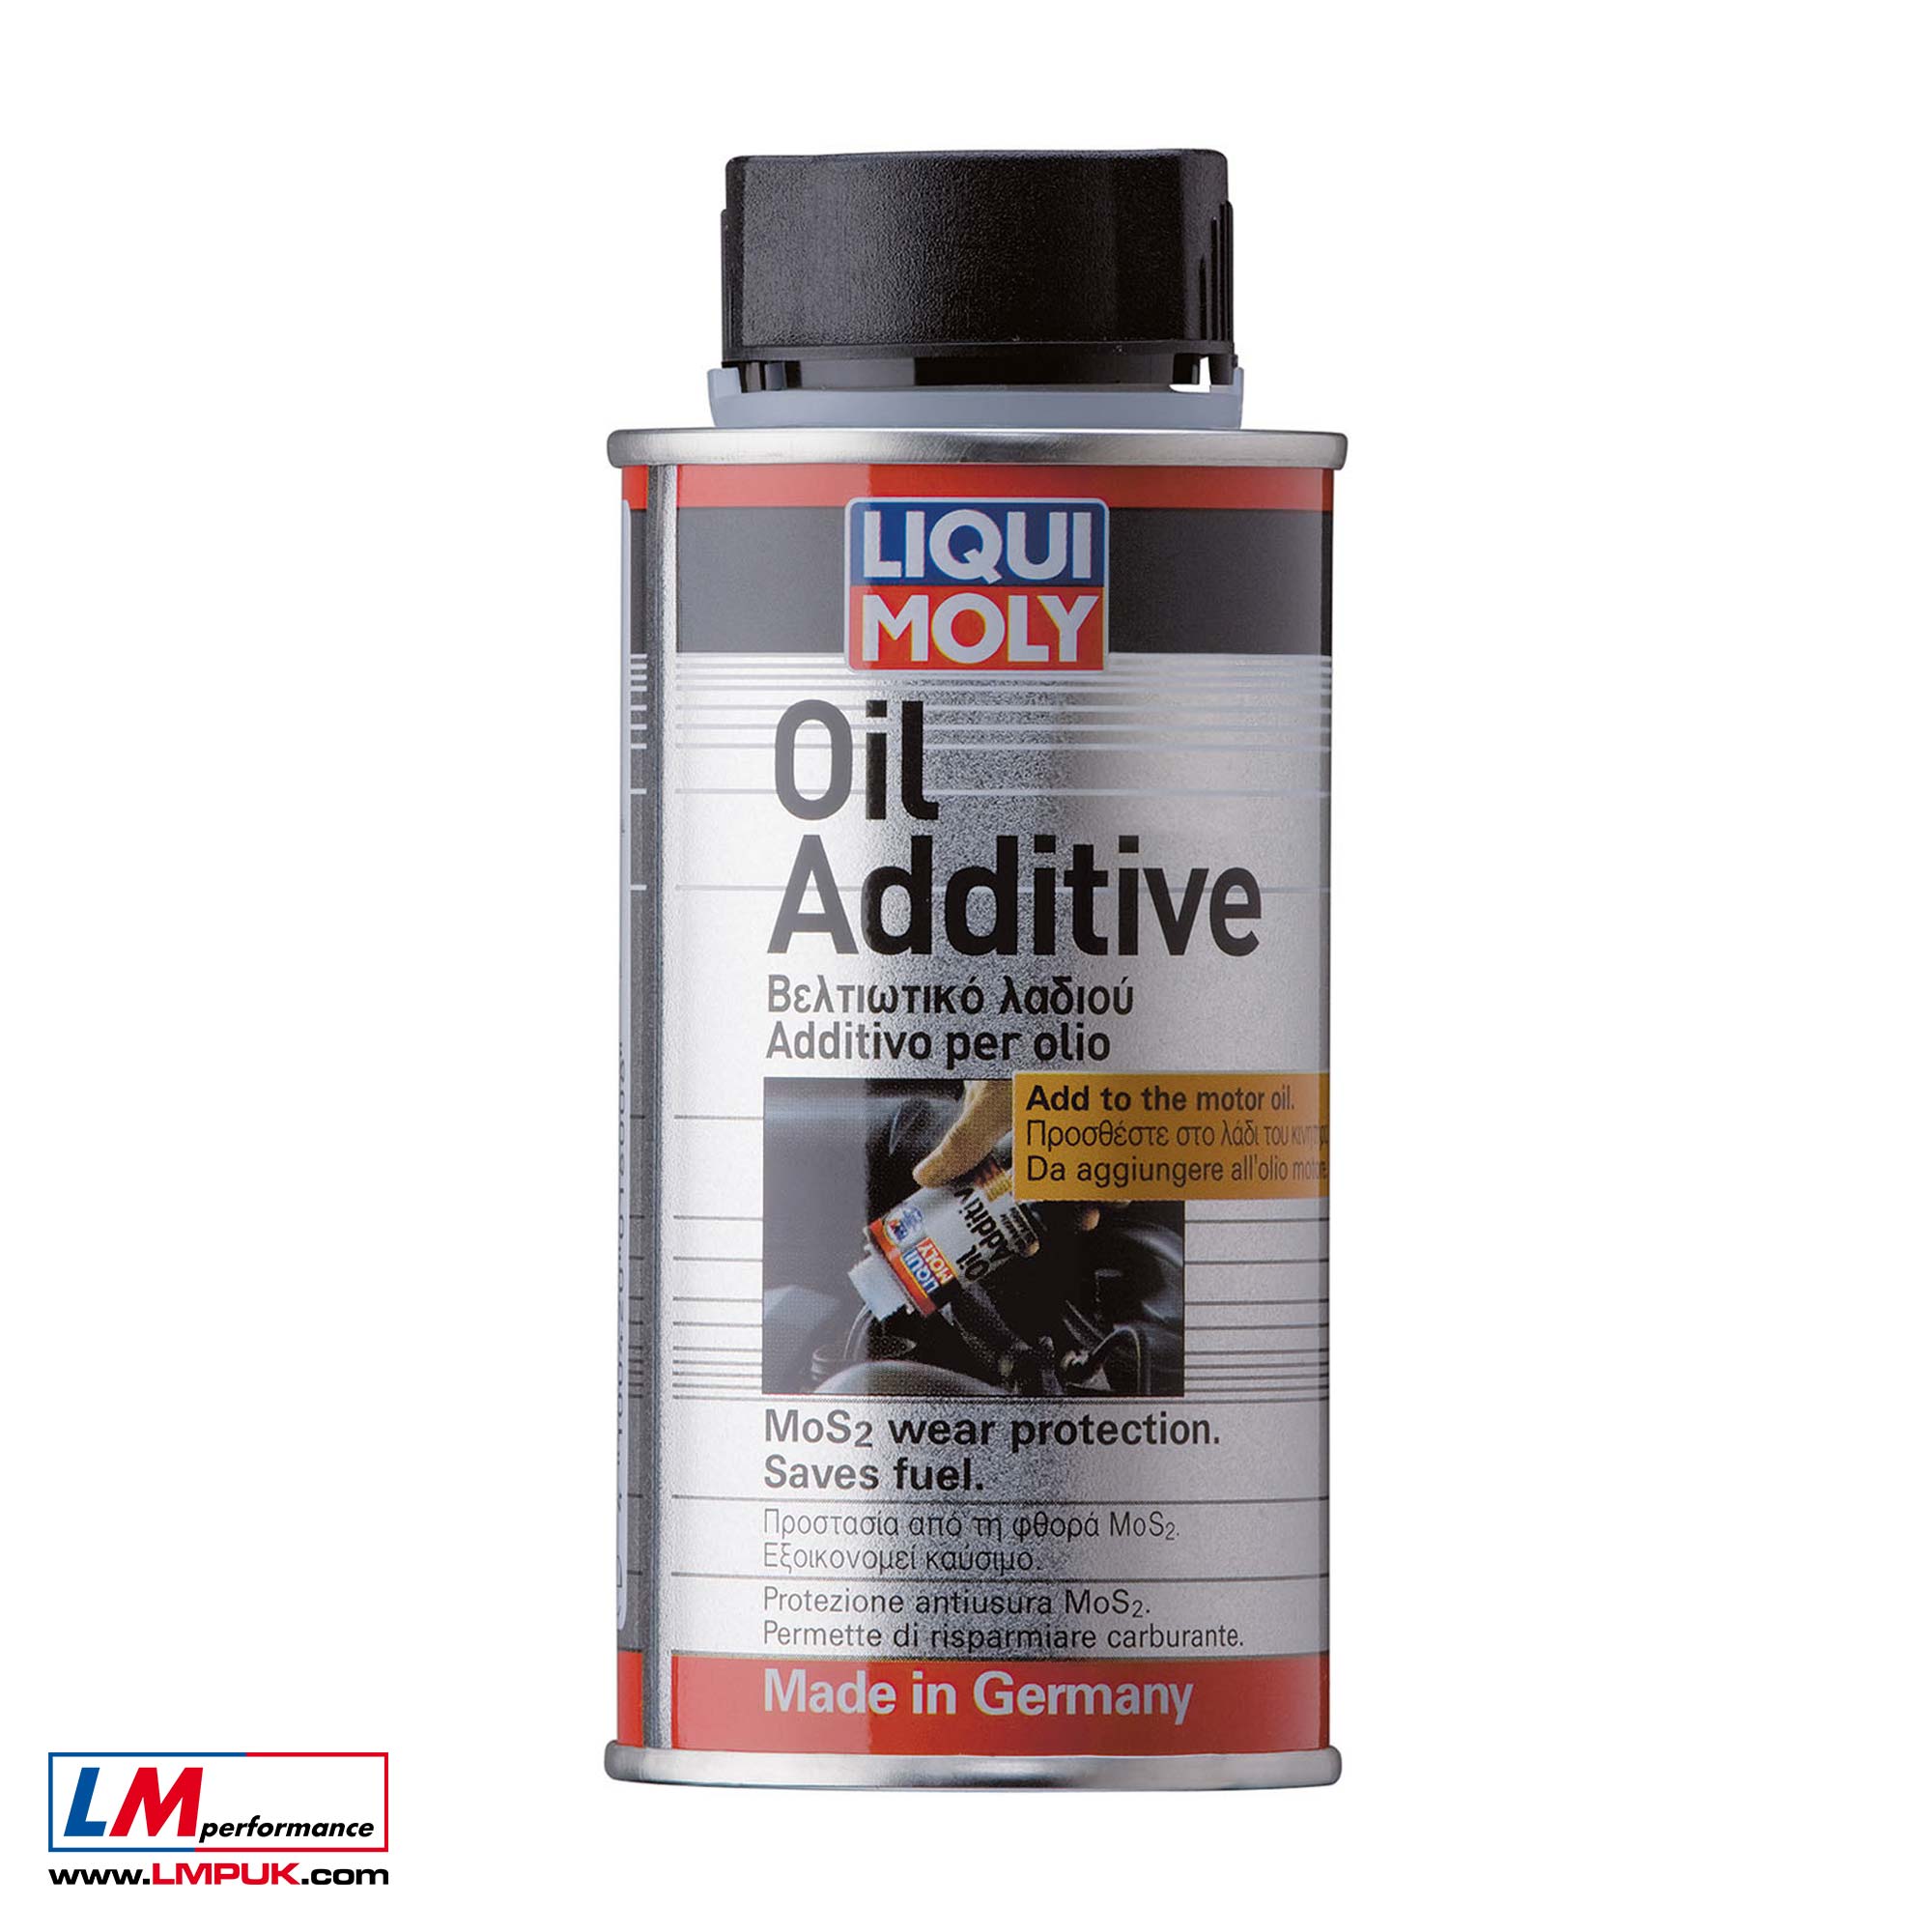 Additive – Liqui Moly Shop